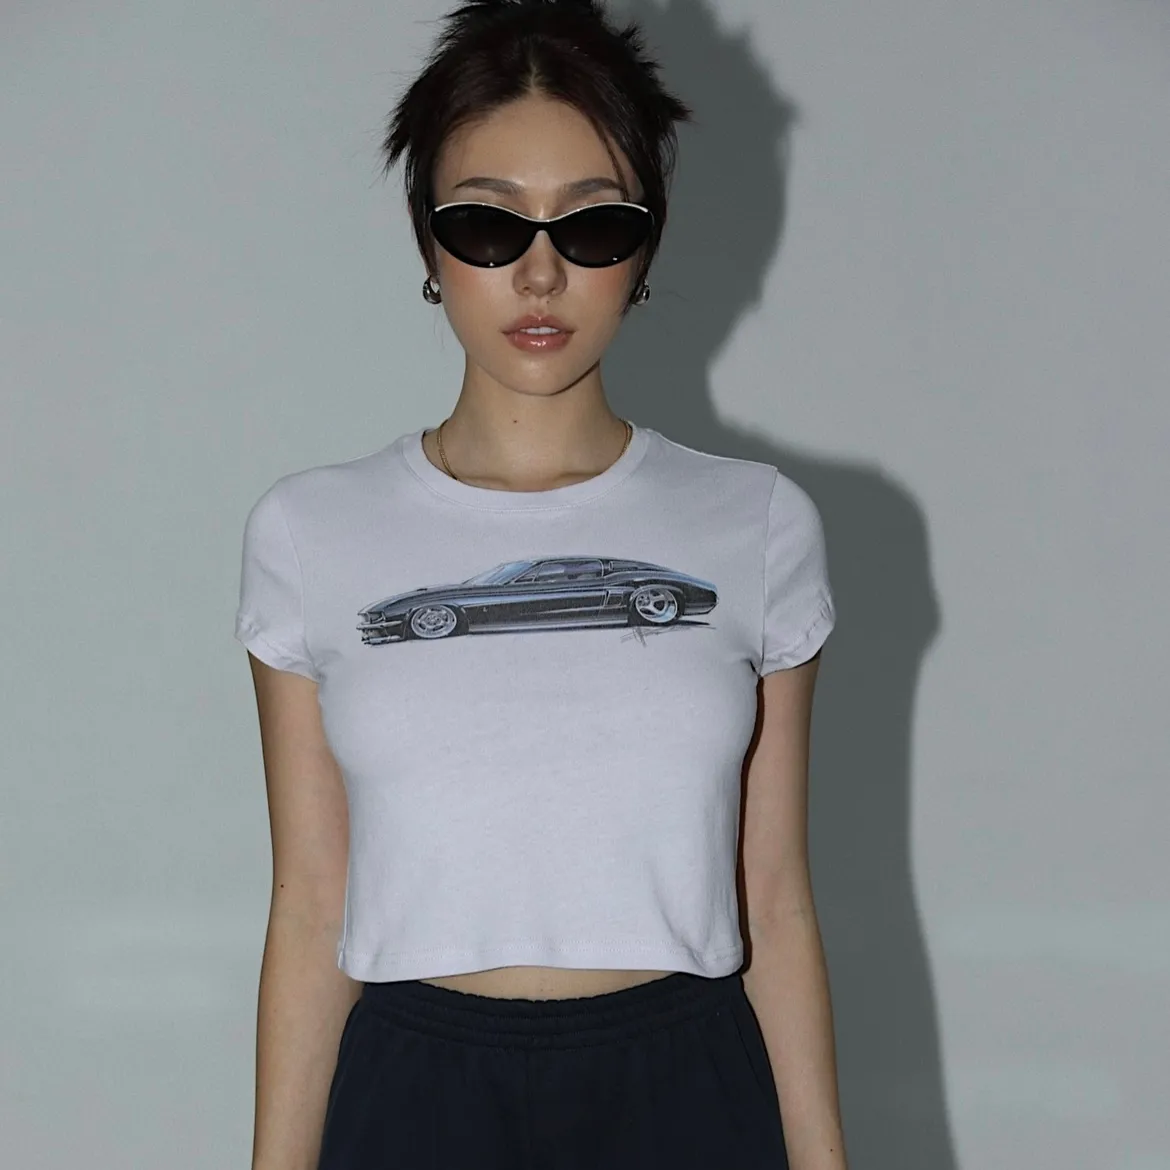 オーガニックコットンファッションベビーTシャツ持続可能な女性セクシープリントクロップTシャツエコフレンドリークロップTシャツ